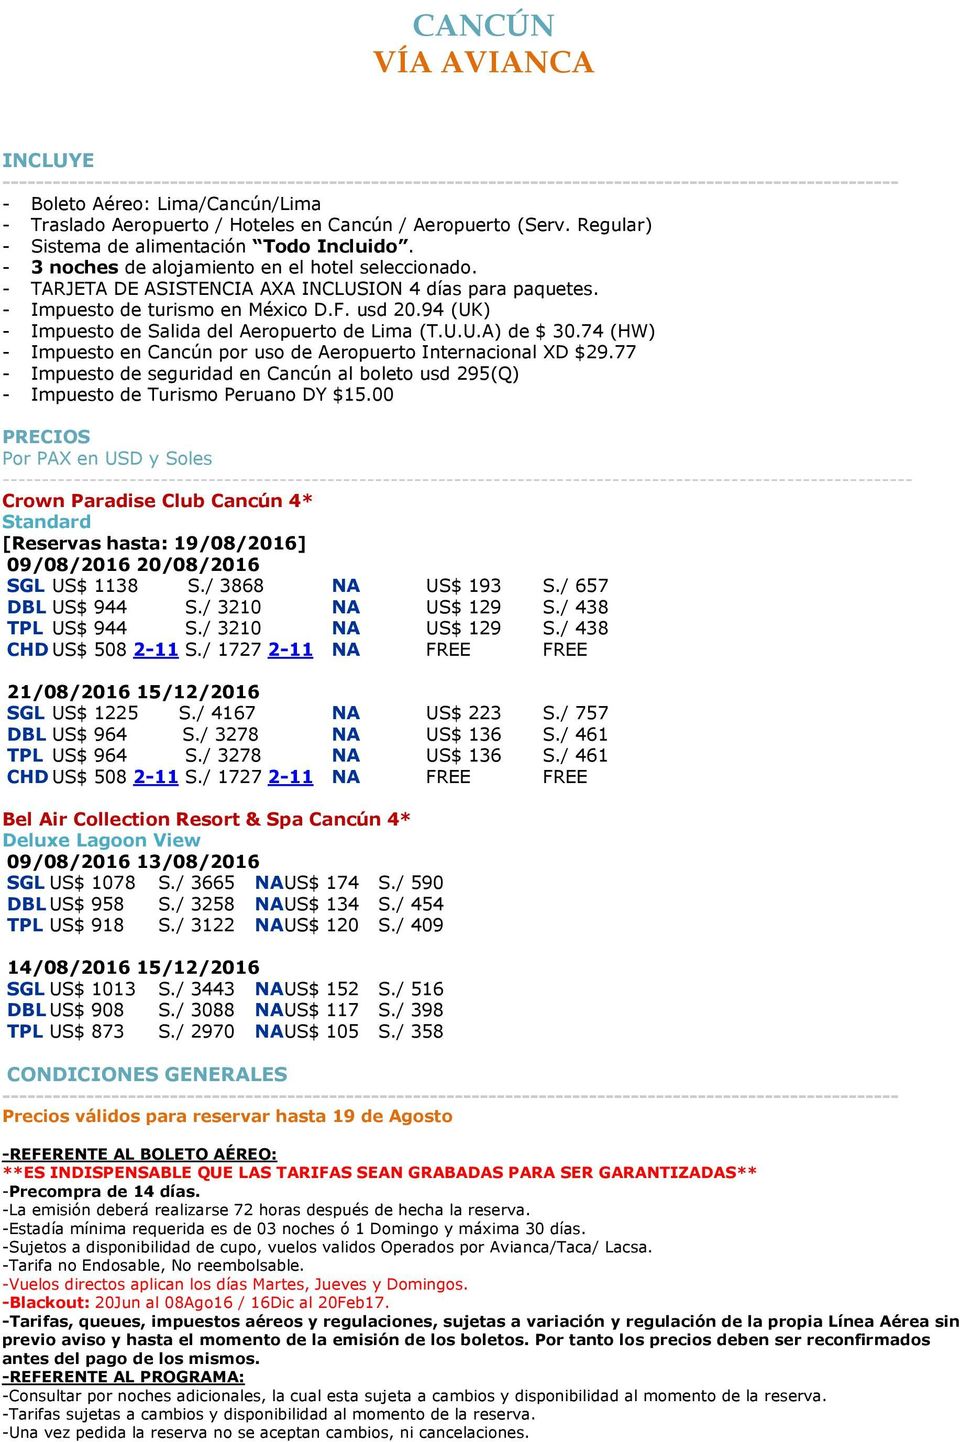 94 (UK) - Impuesto de Salida del Aeropuerto de Lima (T.U.U.A) de $ 30.74 (HW) - Impuesto en Cancún por uso de Aeropuerto Internacional XD $29.